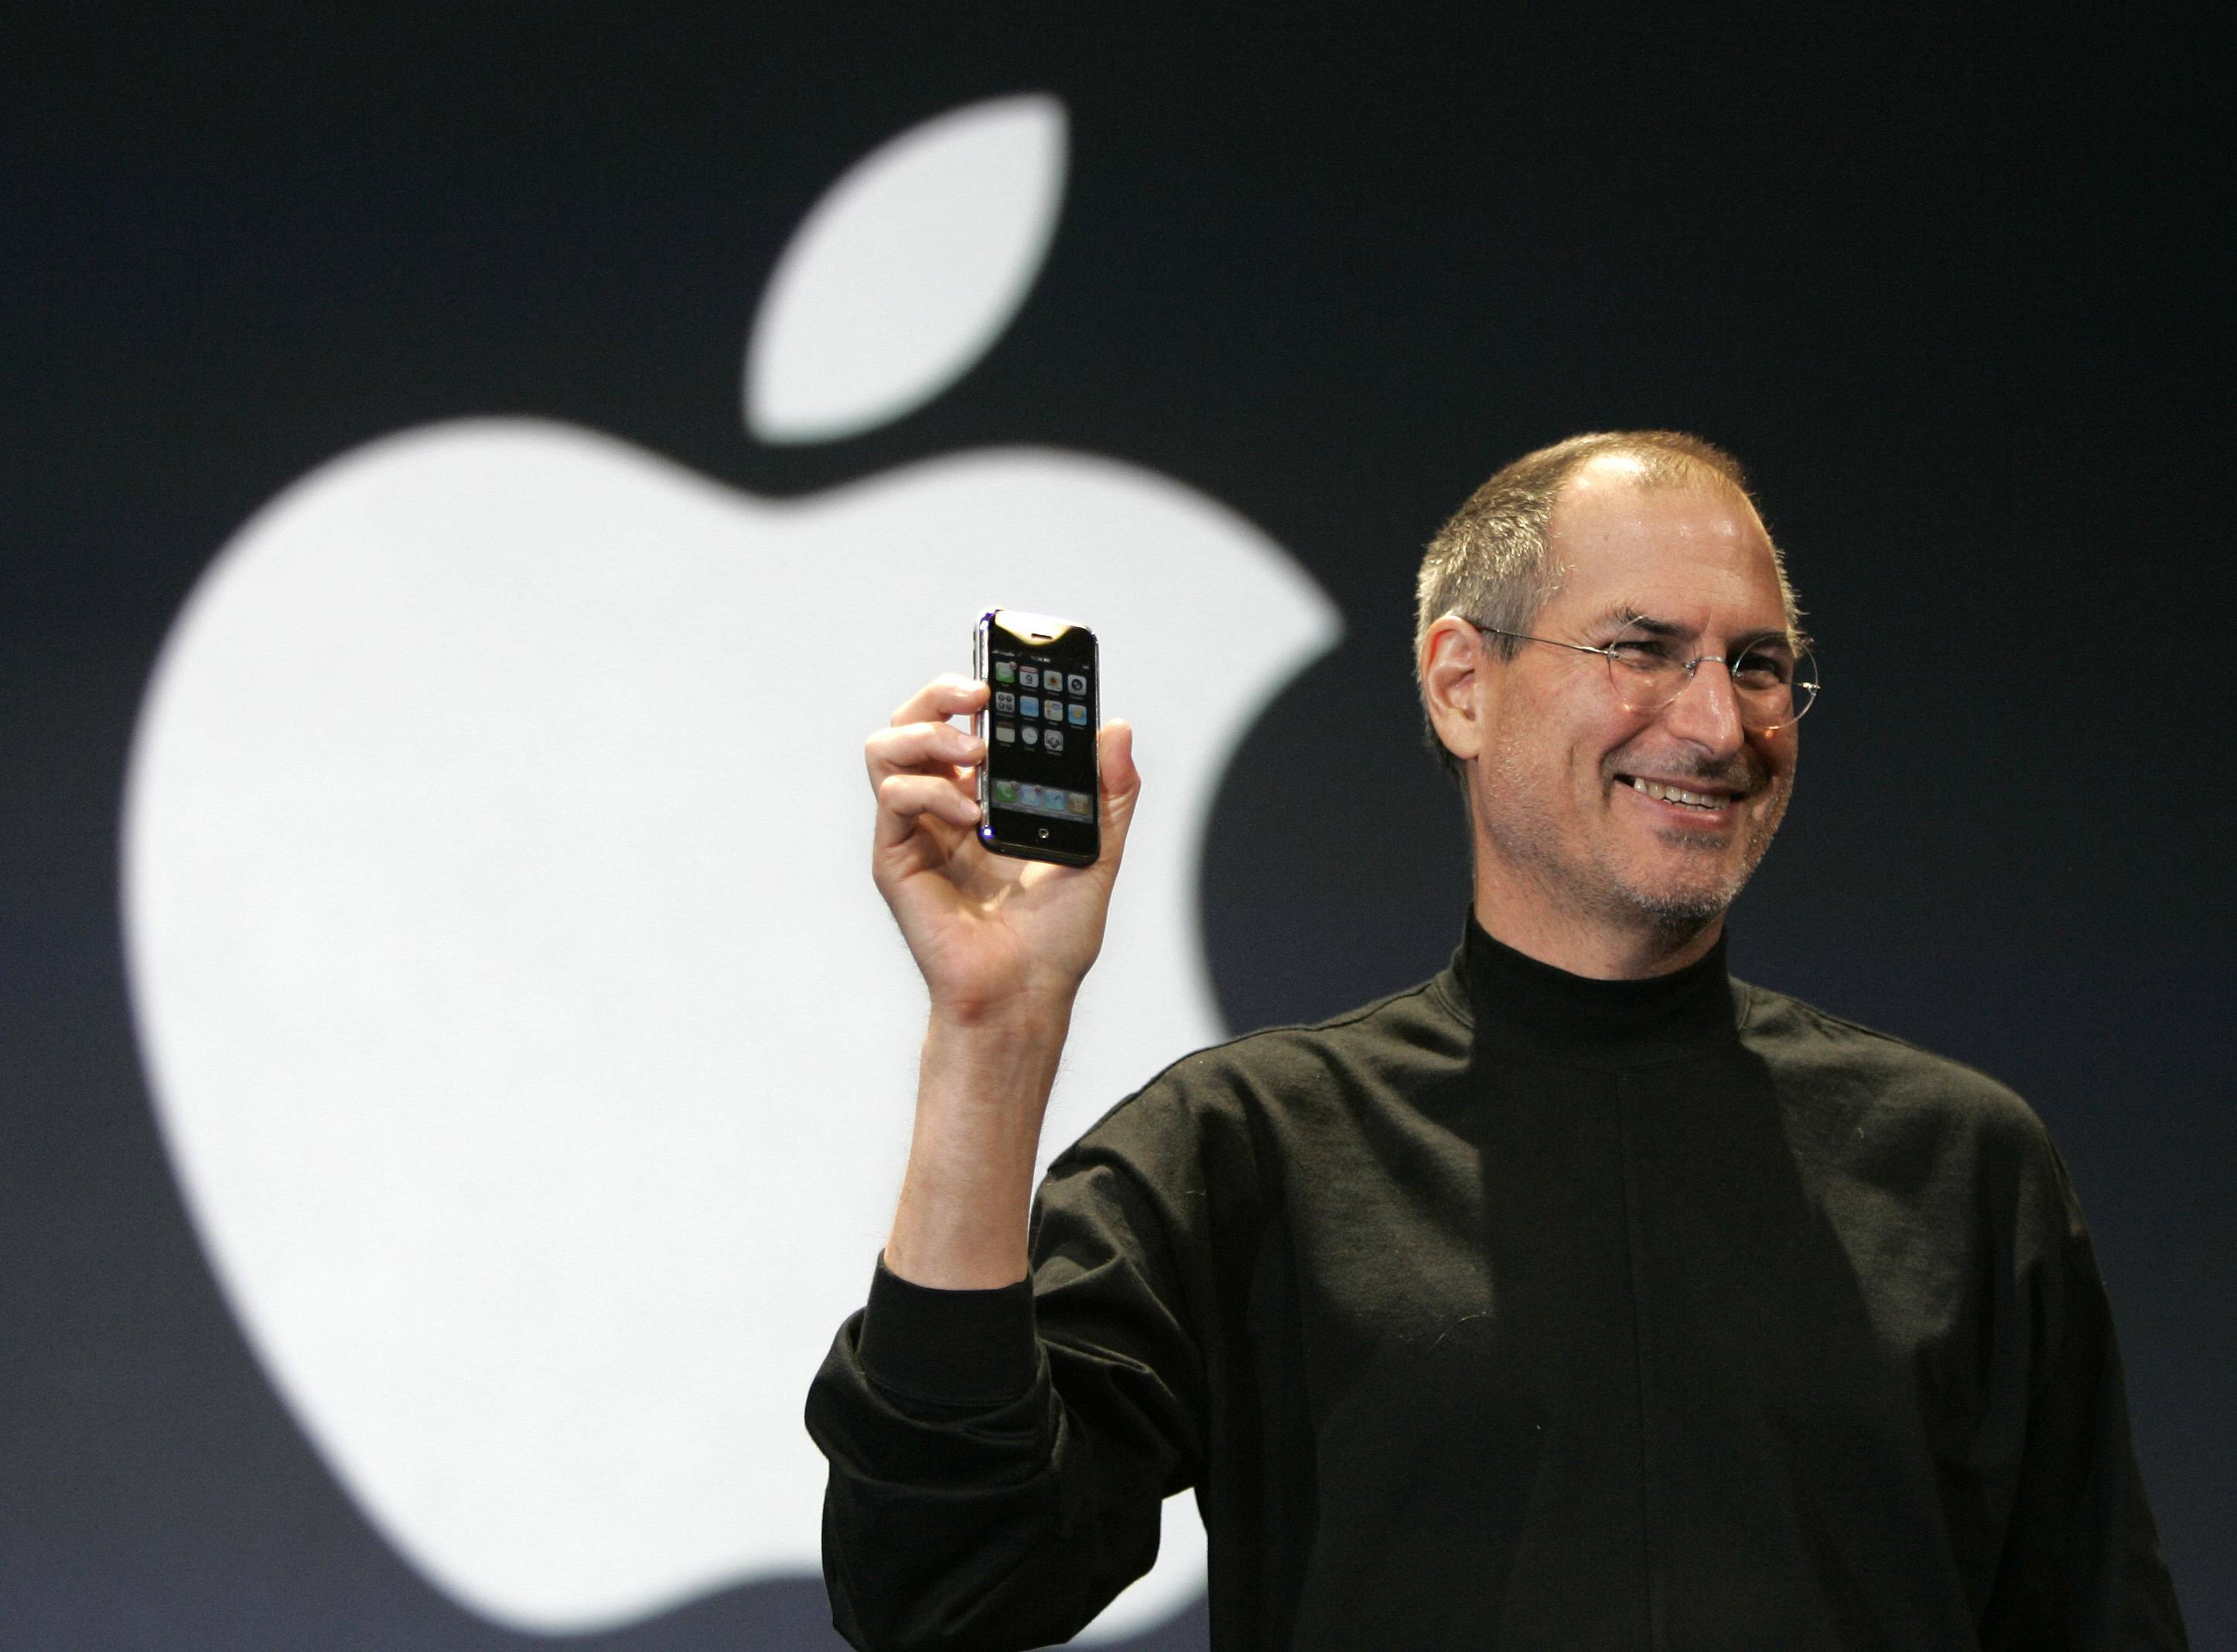 История apple: создание компании, логотипа, история успеха бренда